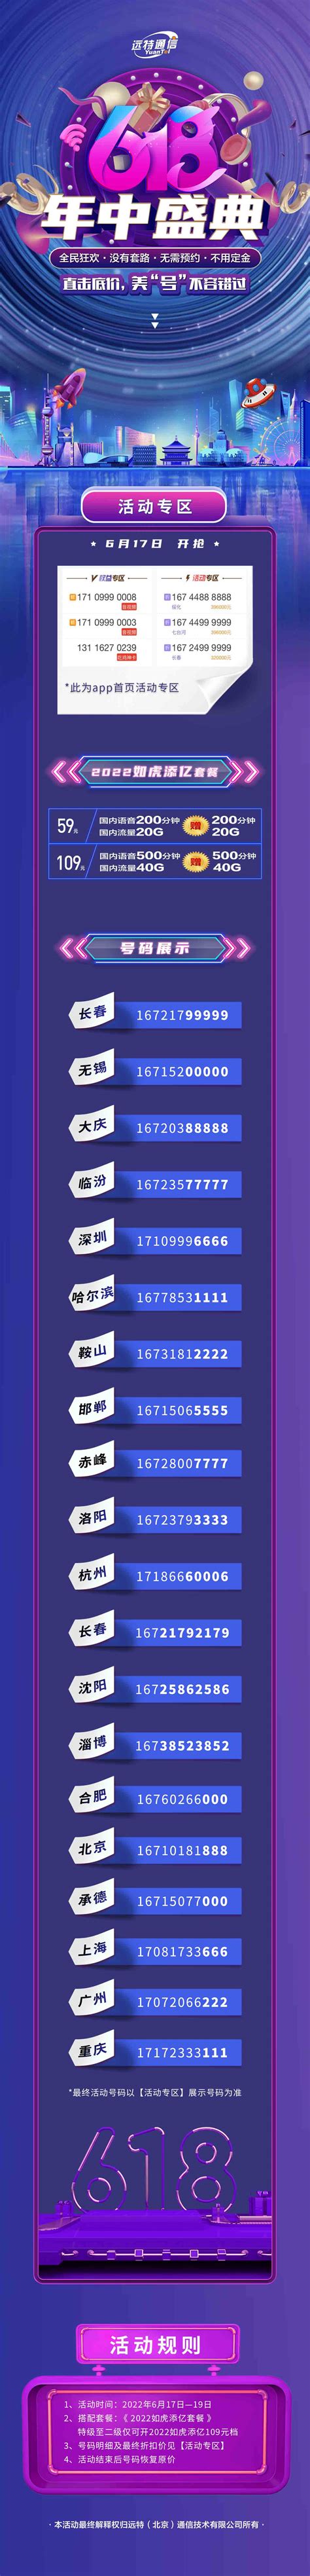 远特通信入榜2019中国通信产业榜虚商用户数十强-远特通信网上营业厅